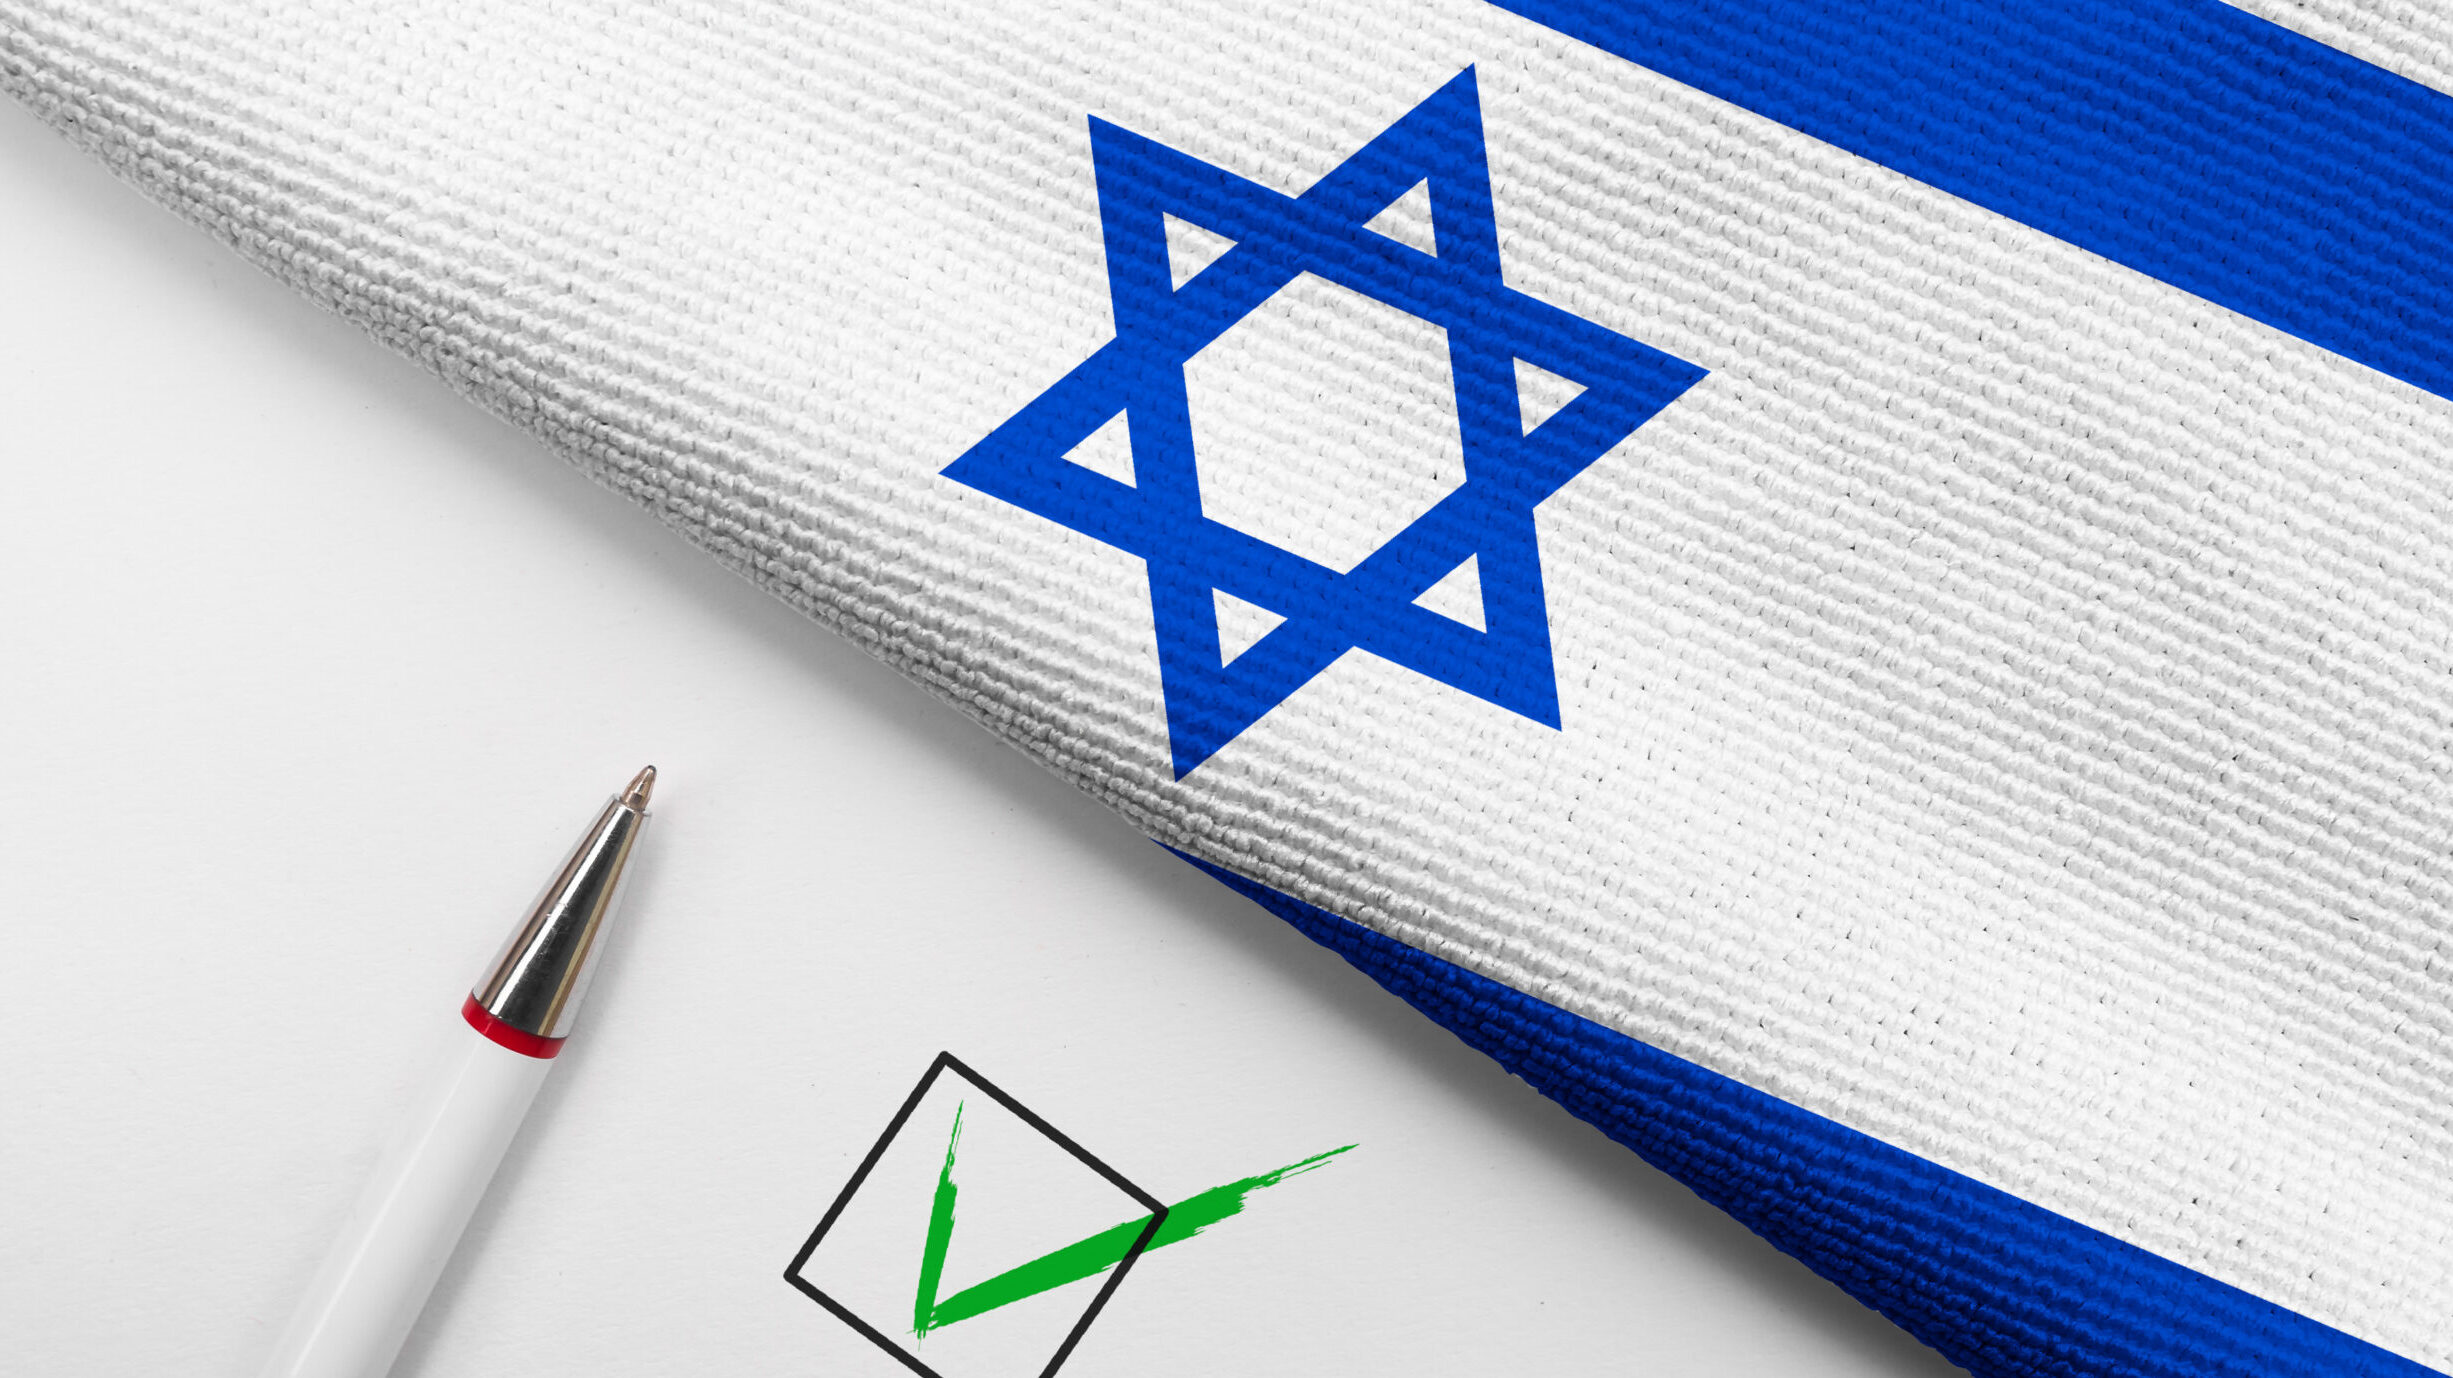 آخر استطلاع للمعهد الدولي للديمقراطية: الإسرائيليون متفائلون إلى حد كبير بشأن المستقبل، لكنهم منقسمون بين اليهود والعرب